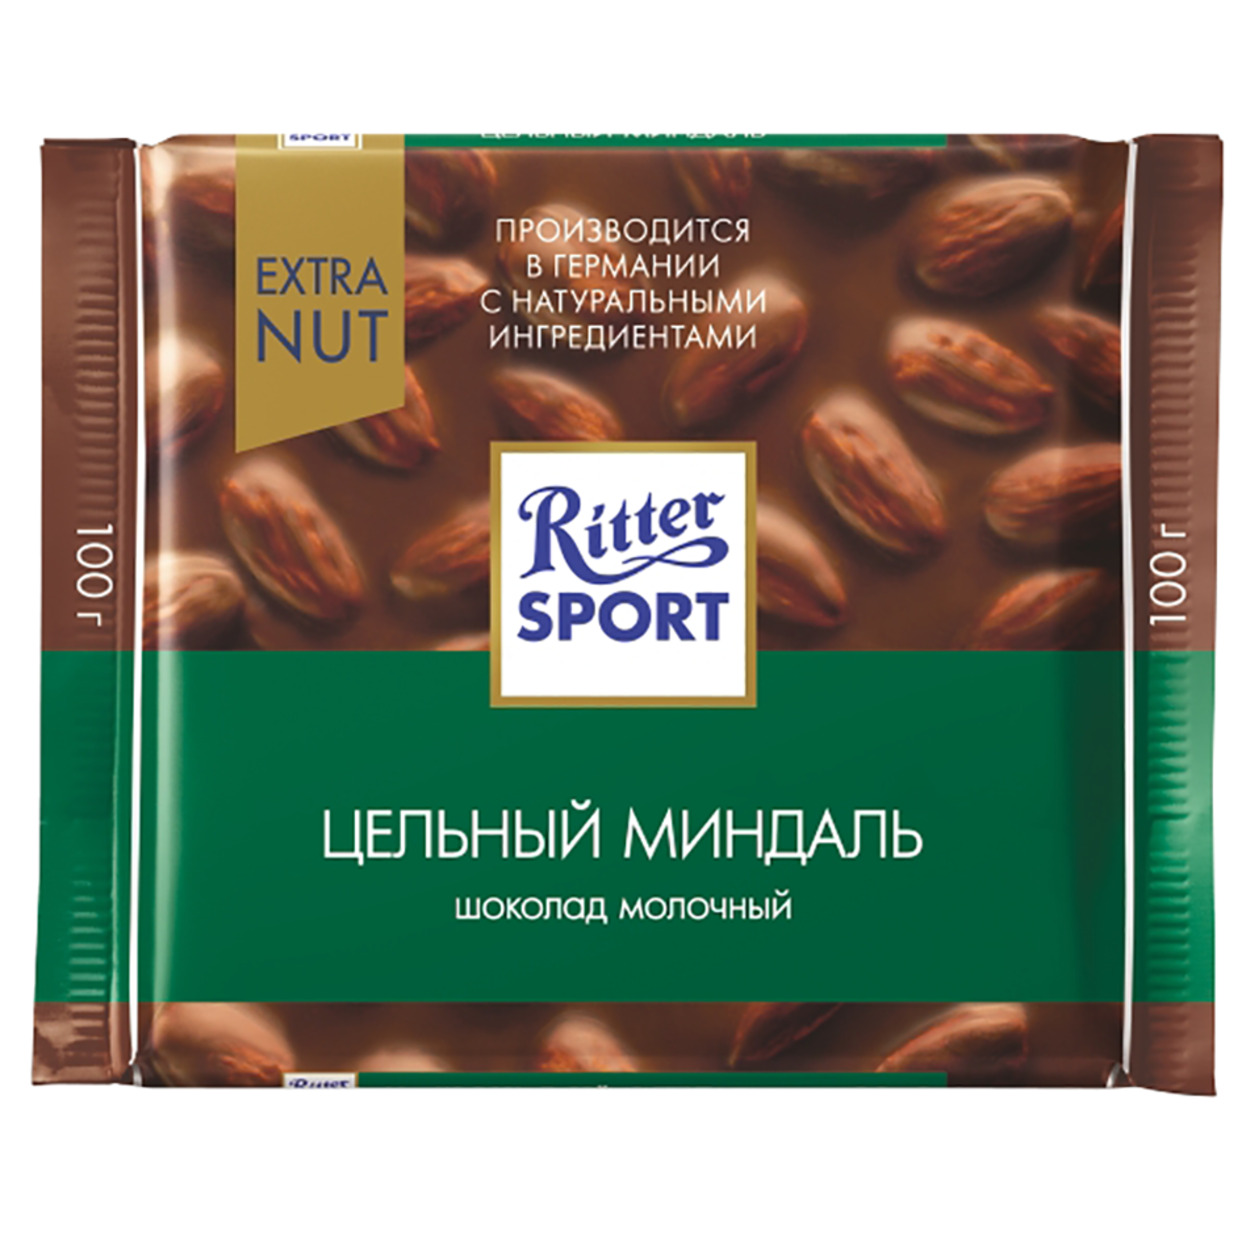 Шоколад Ritter Sport Молочный Цельный миндаль 100г по акции в Пятерочке